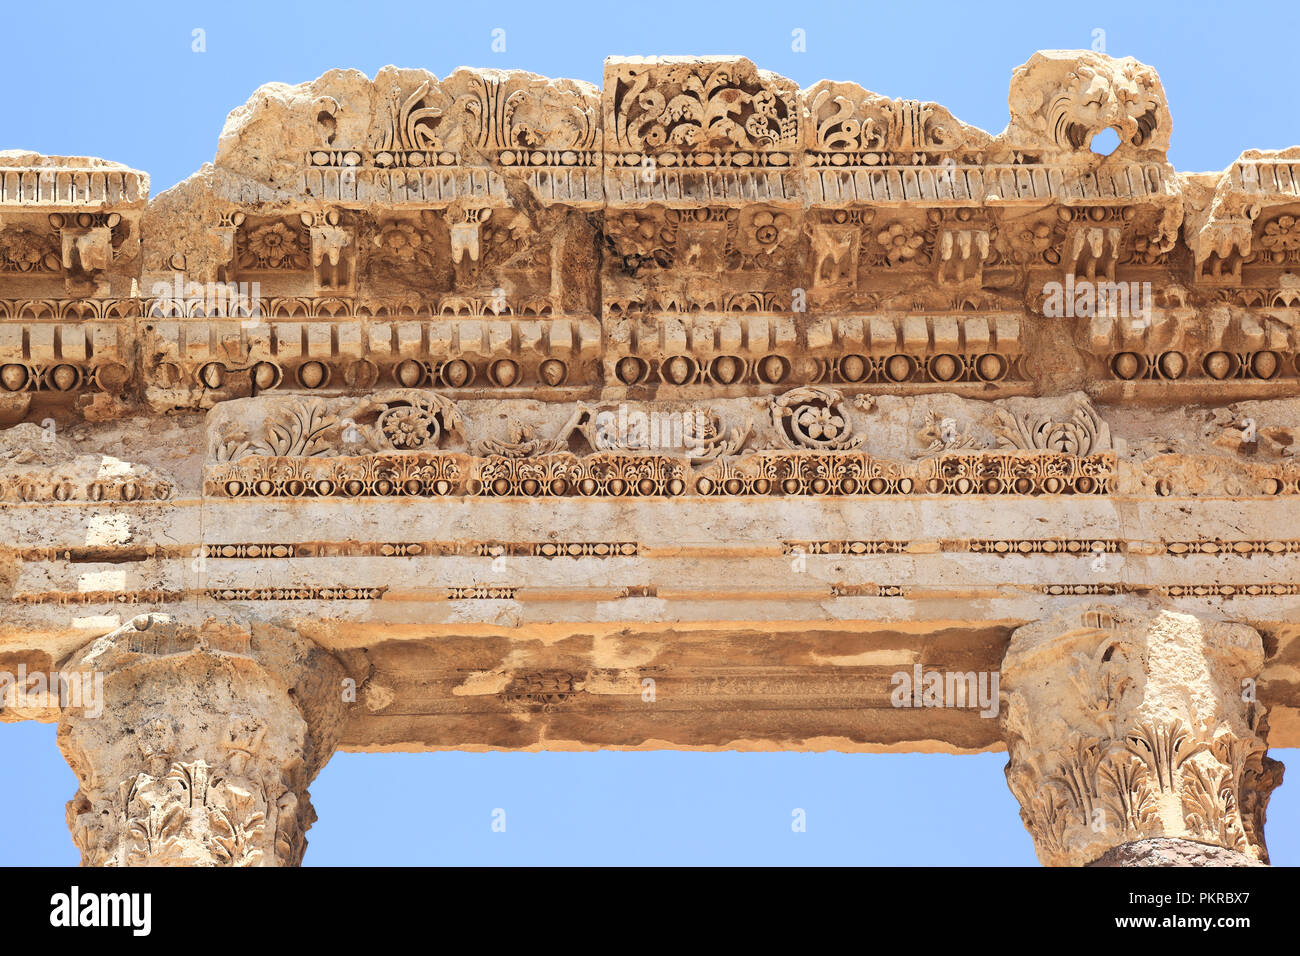 Ruines Romaines de Baalbek au Liban, les détails de la pierre taillée Banque D'Images